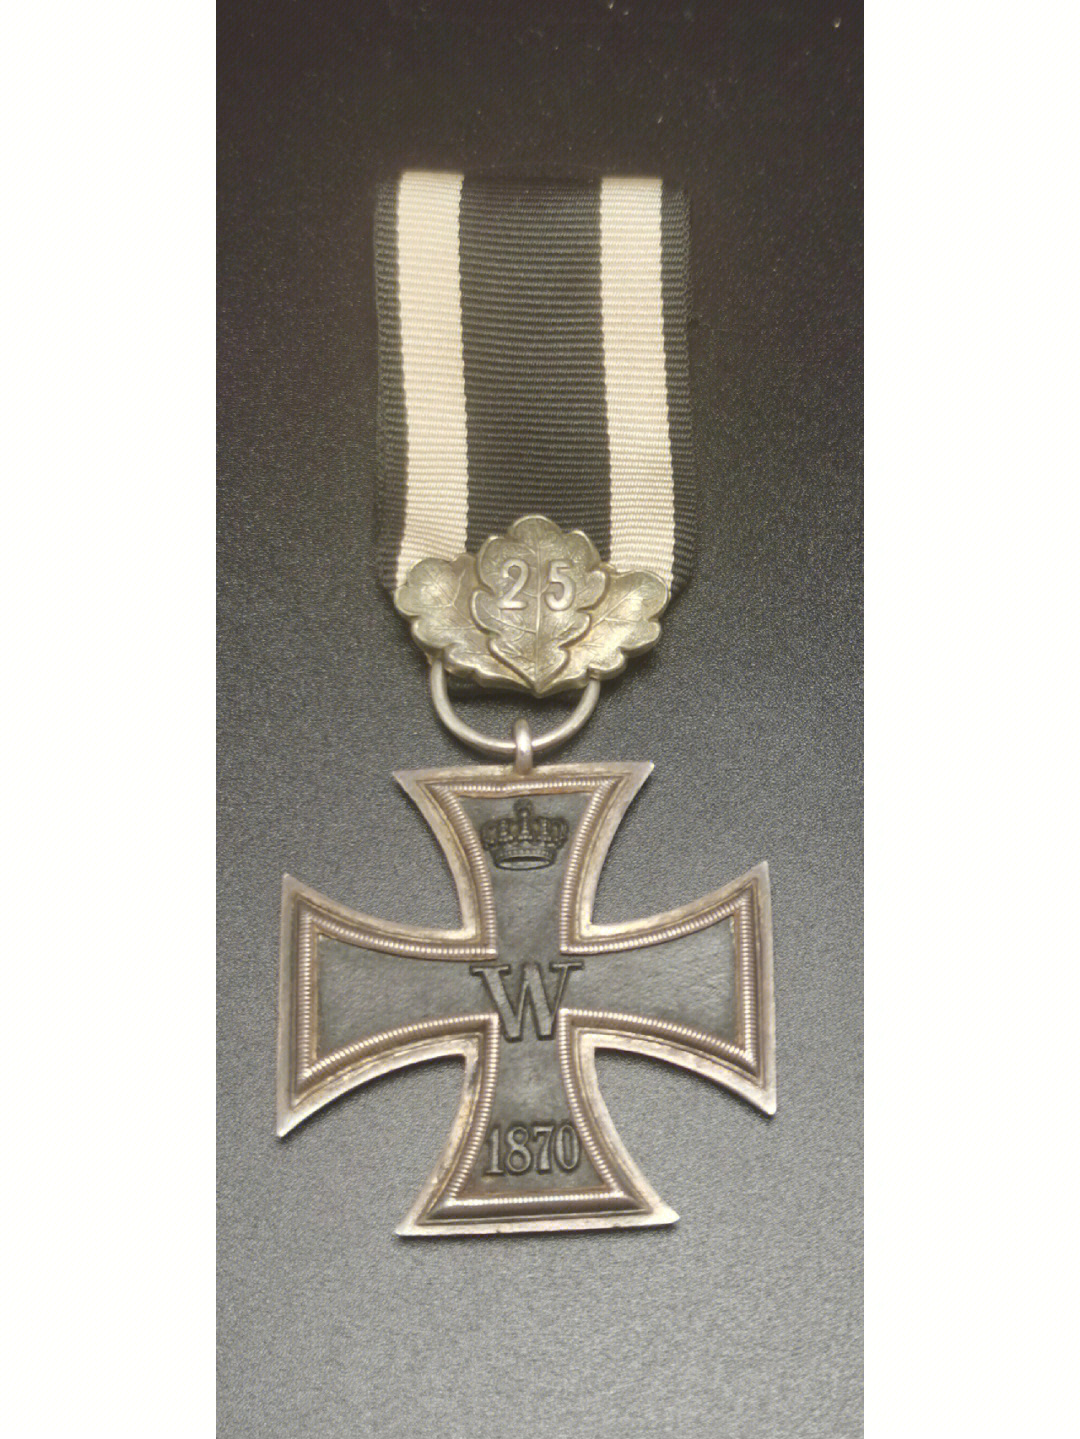 1870版二级铁十字勋章